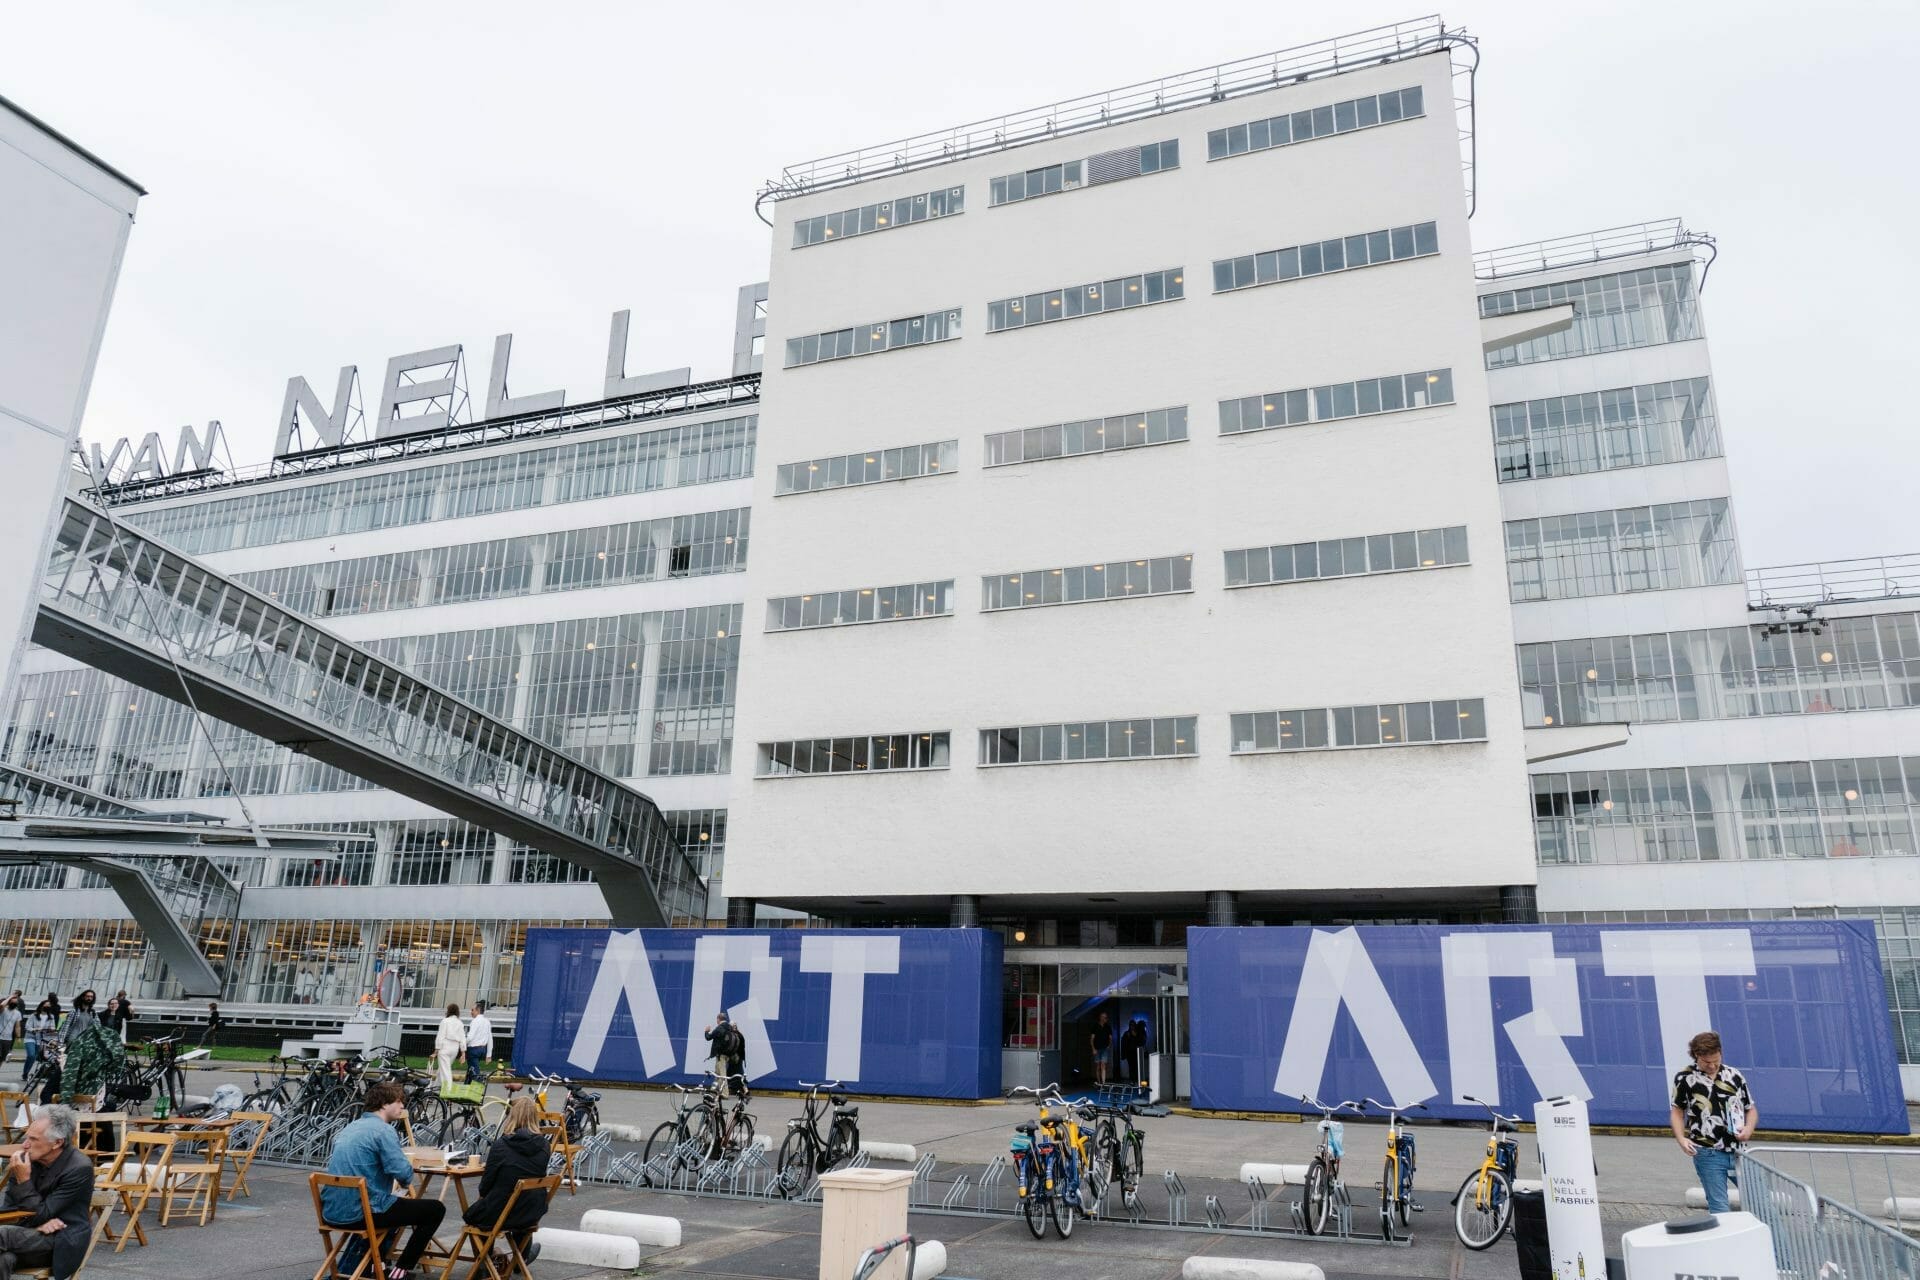 Art Rotterdam 2022